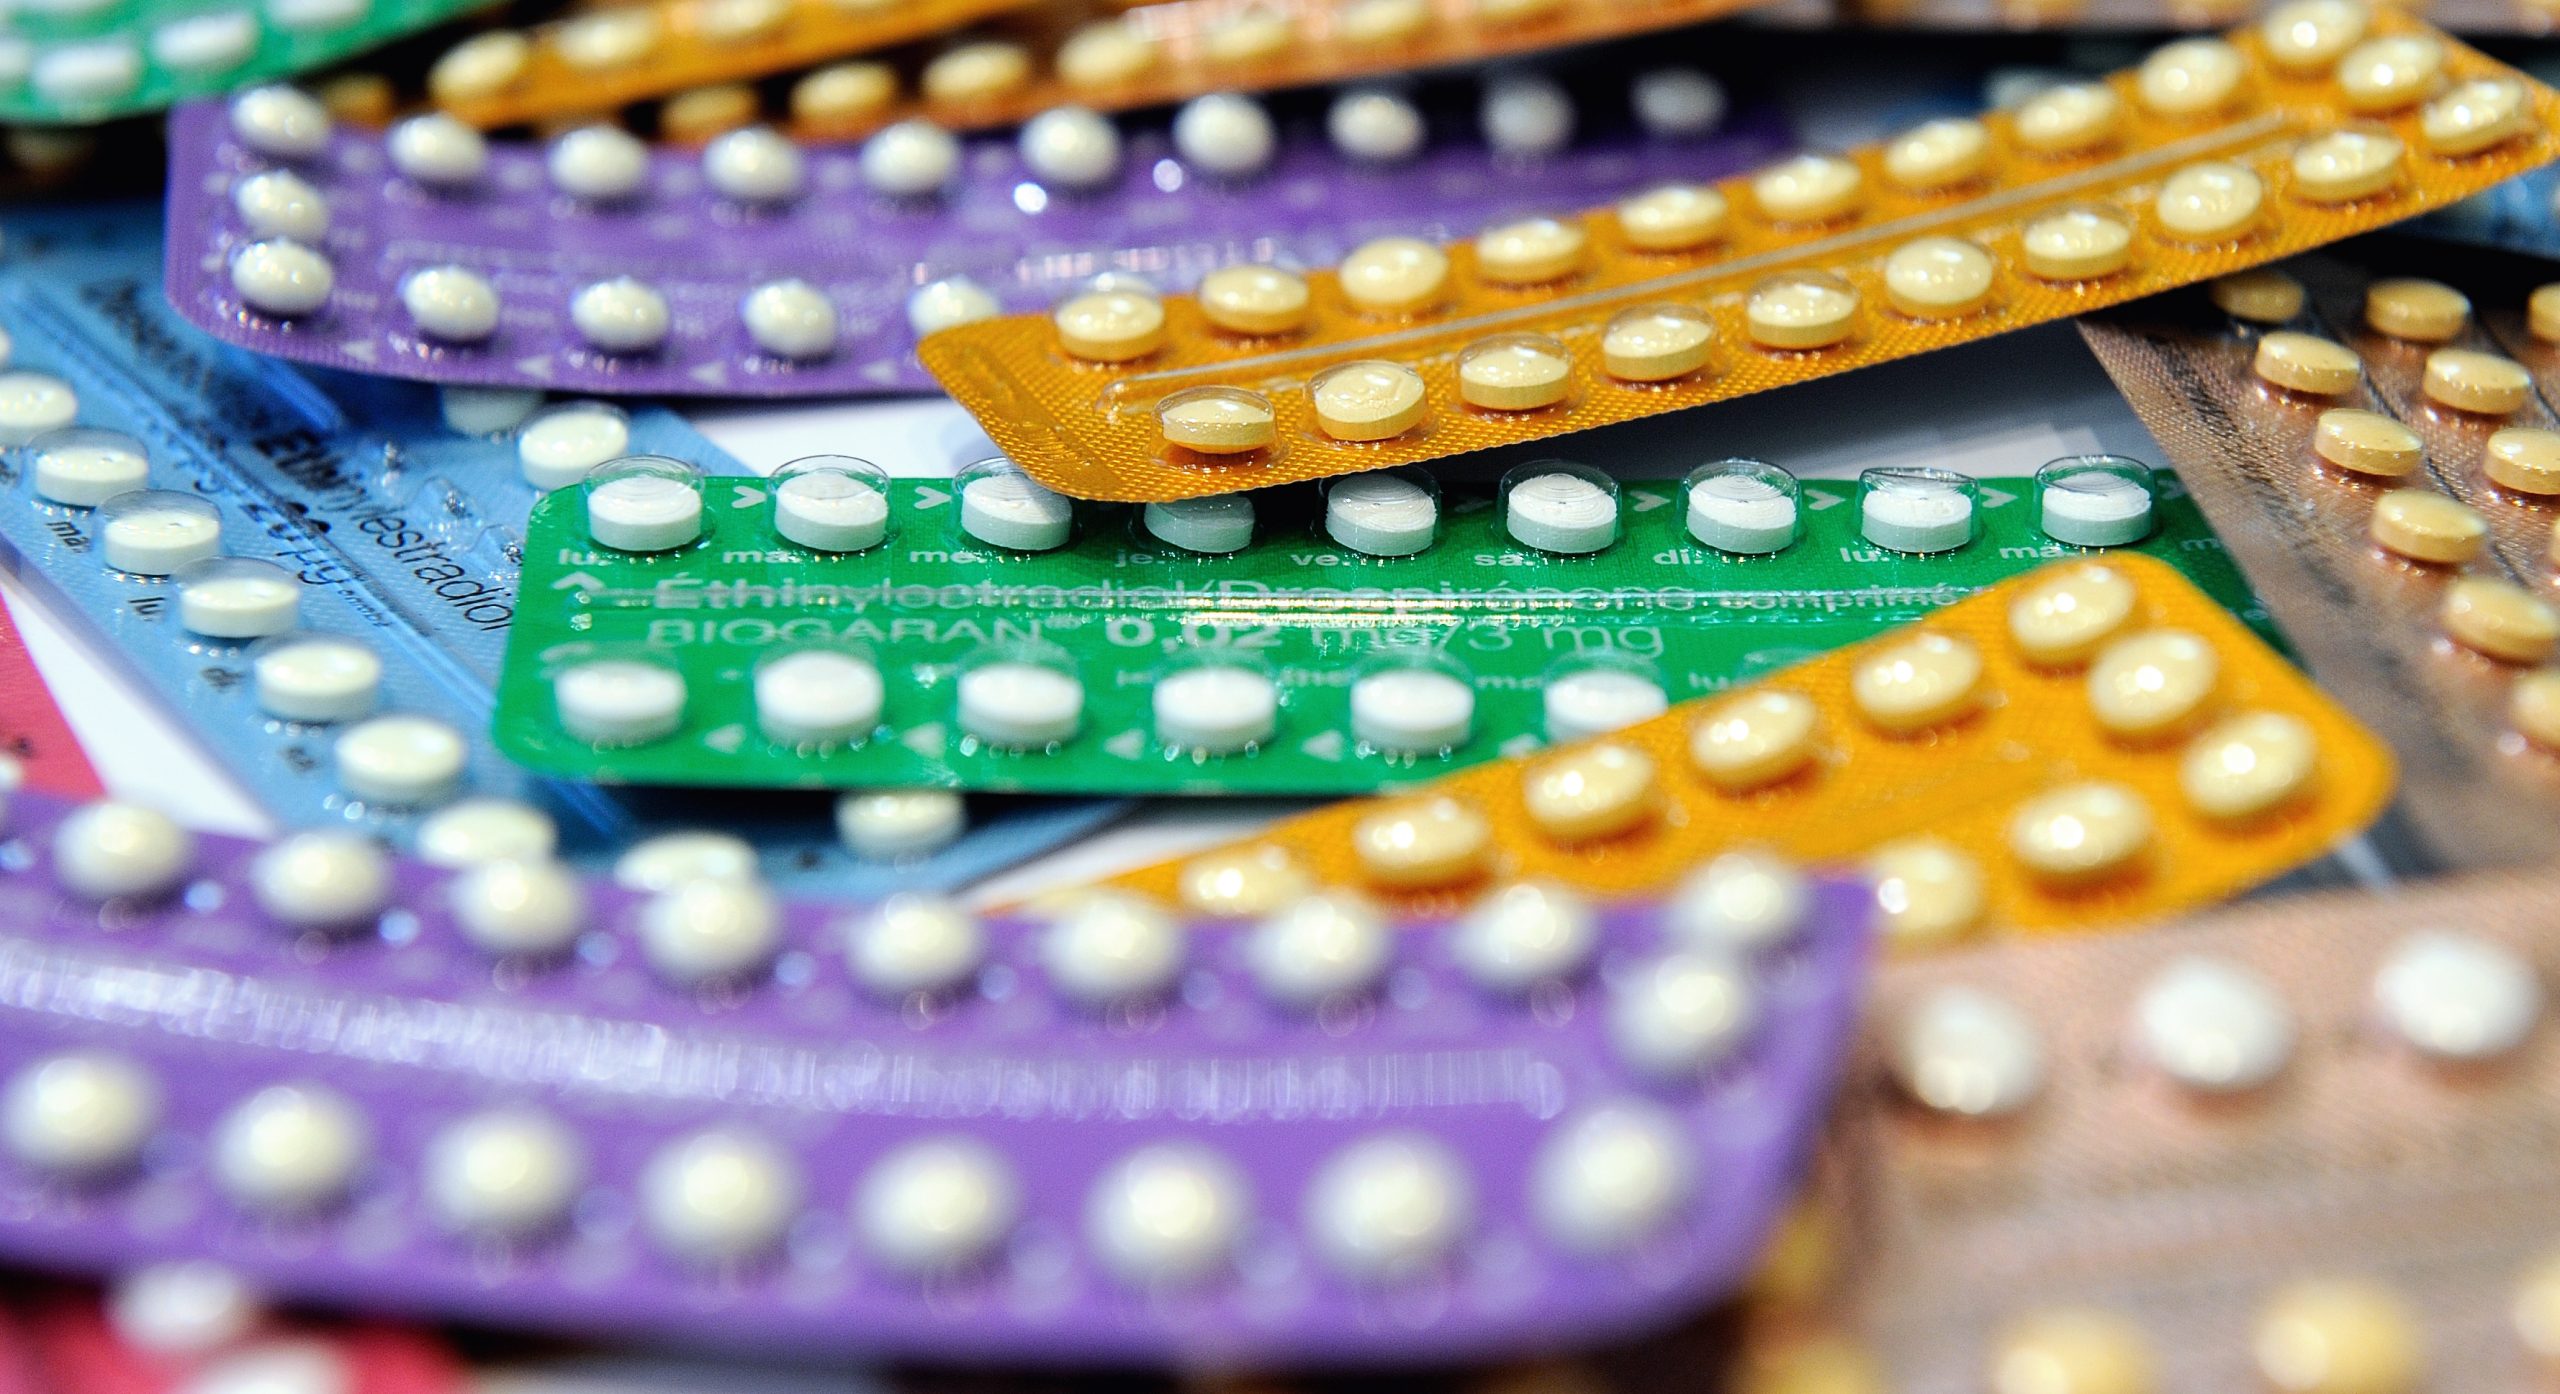 Pastillas anticonceptivas: las respuestas a las dudas de quienes las toman o planean hacerlo